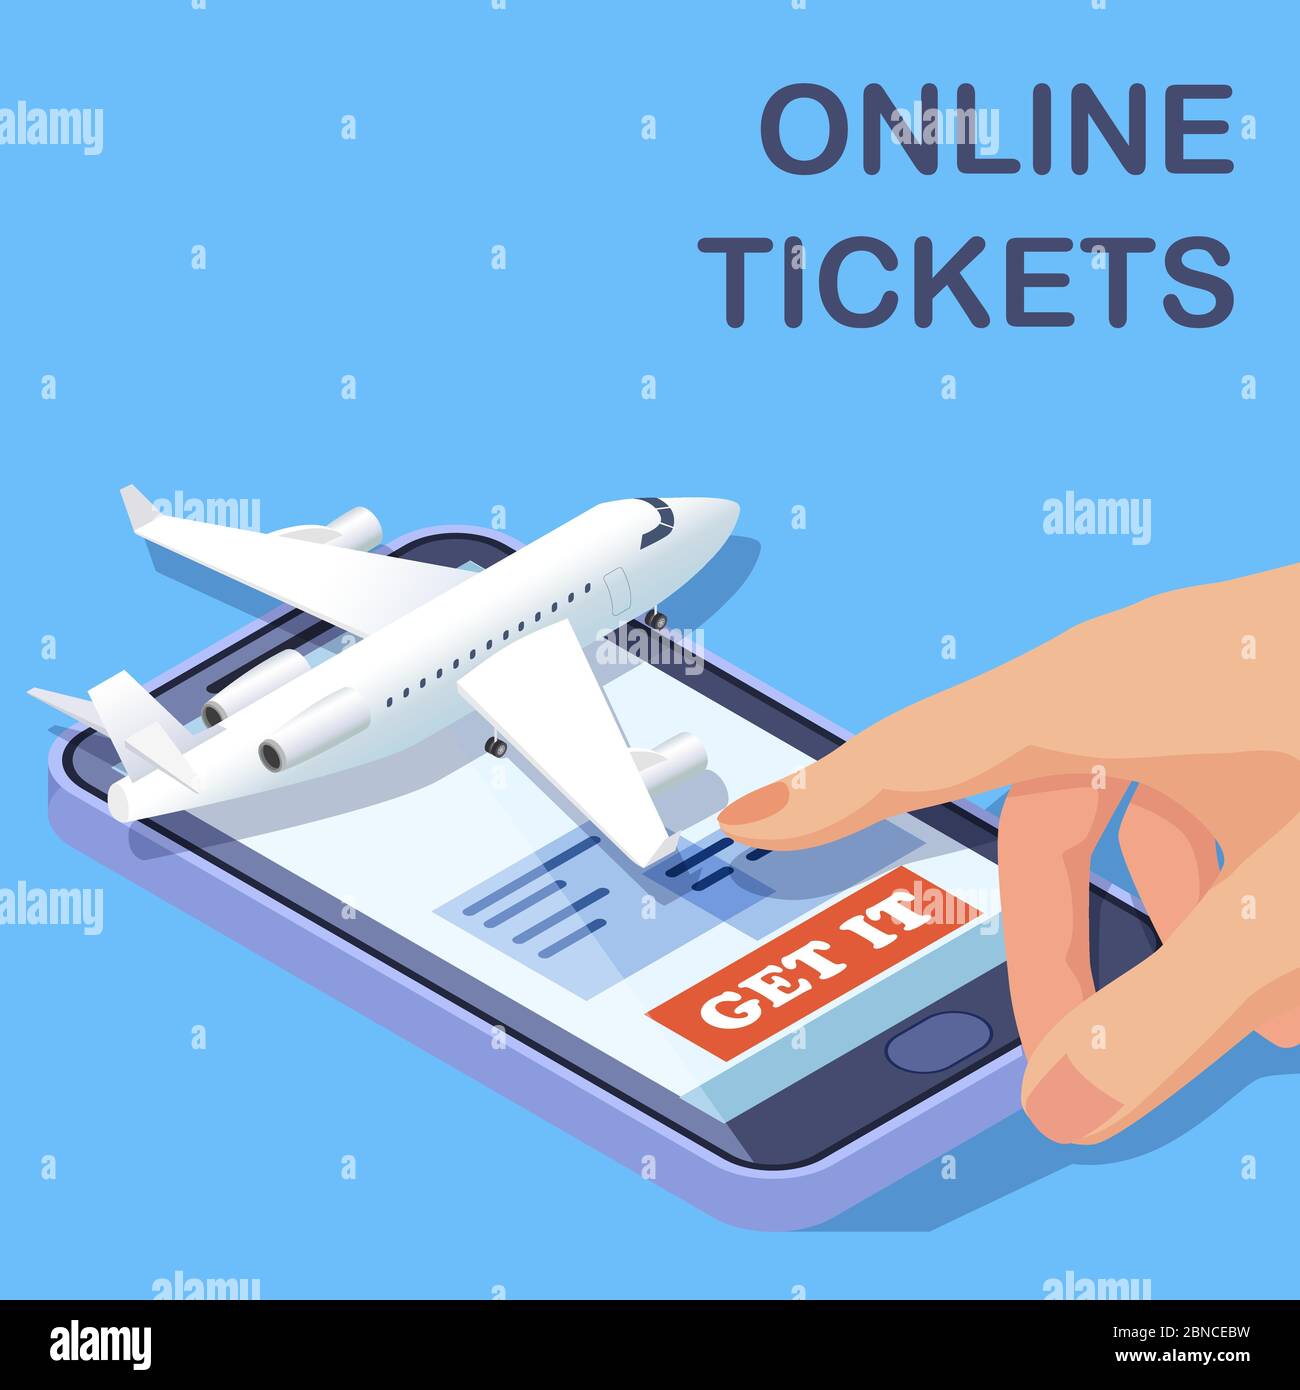 Online-Tickets für Fluggesellschaften, mobile App, isometrisches Vektorkonzept. Illustration von Online-Tickets kaufen, um Flugzeug Stock Vektor